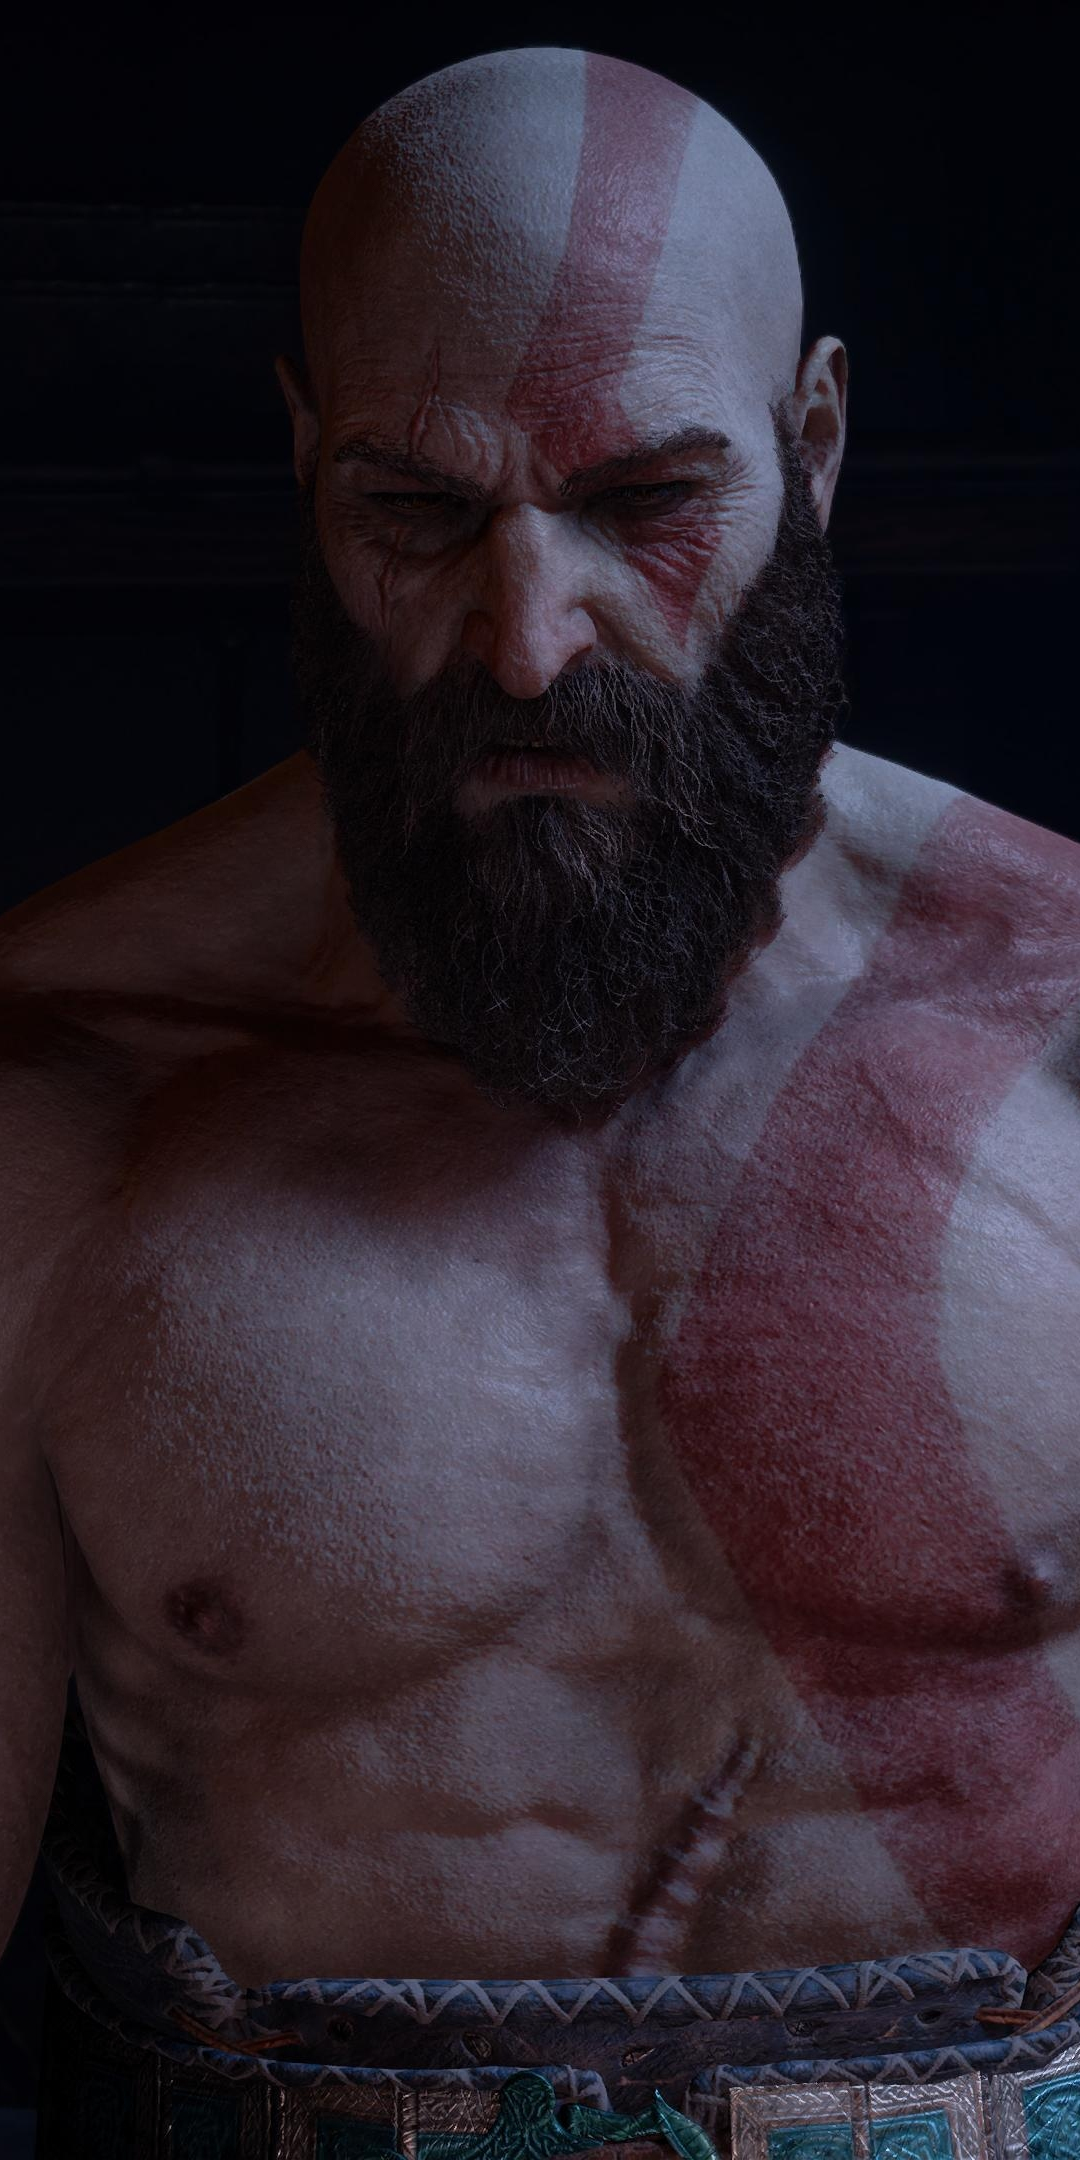 God of war, Kratos's muscular body, 1080x2160 wallpaper